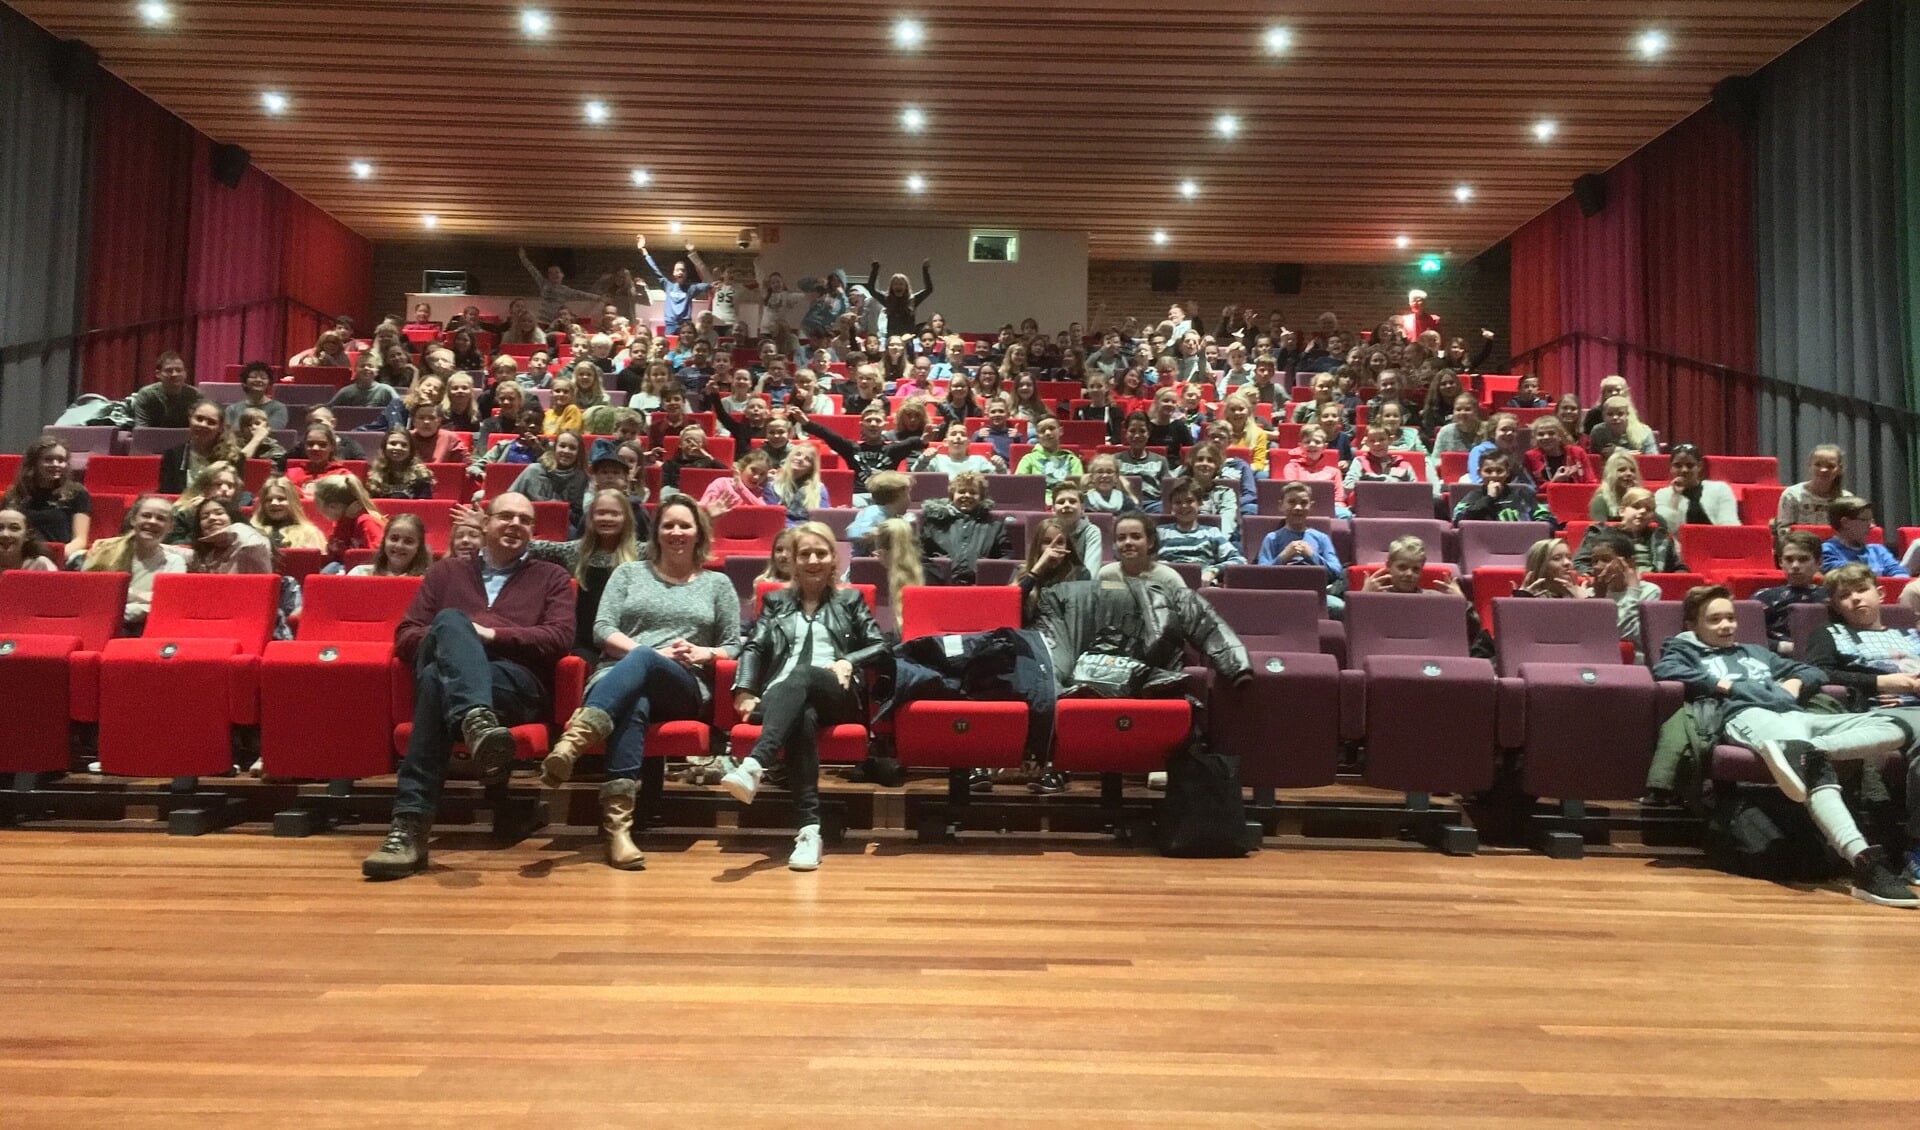 Veel leerlingen uit groep 8 konden op 12 december, de dag dat docenten uit het basisonderwijs staakten, terecht in Floralis voor een speciale film. Het werd georganiseerd door het Fioretti Lisse.